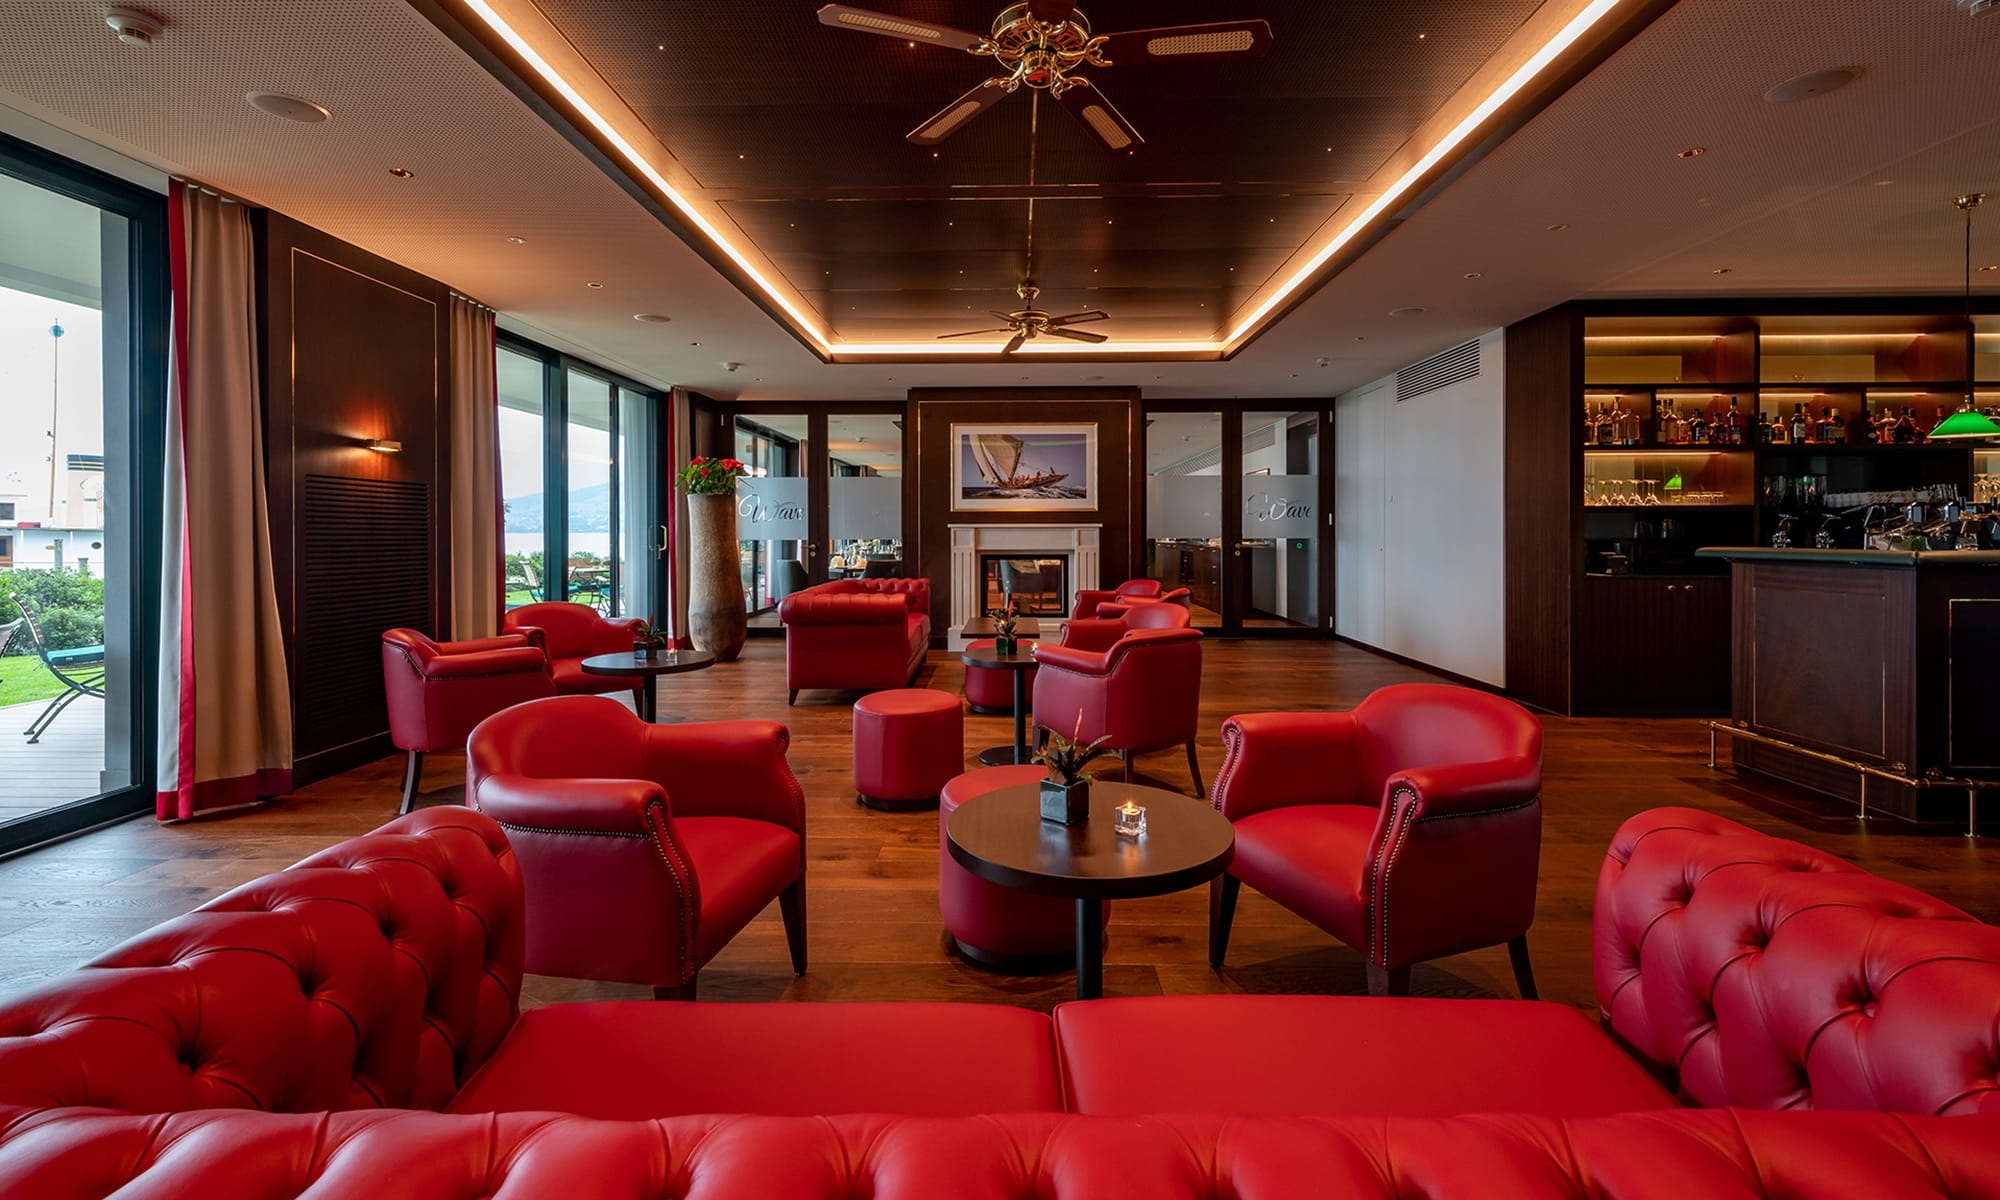 Lounge und Bar im Hotel Bad Horn mit roten Sitzmöbeln und indirekter Deckenbeleuchtung 